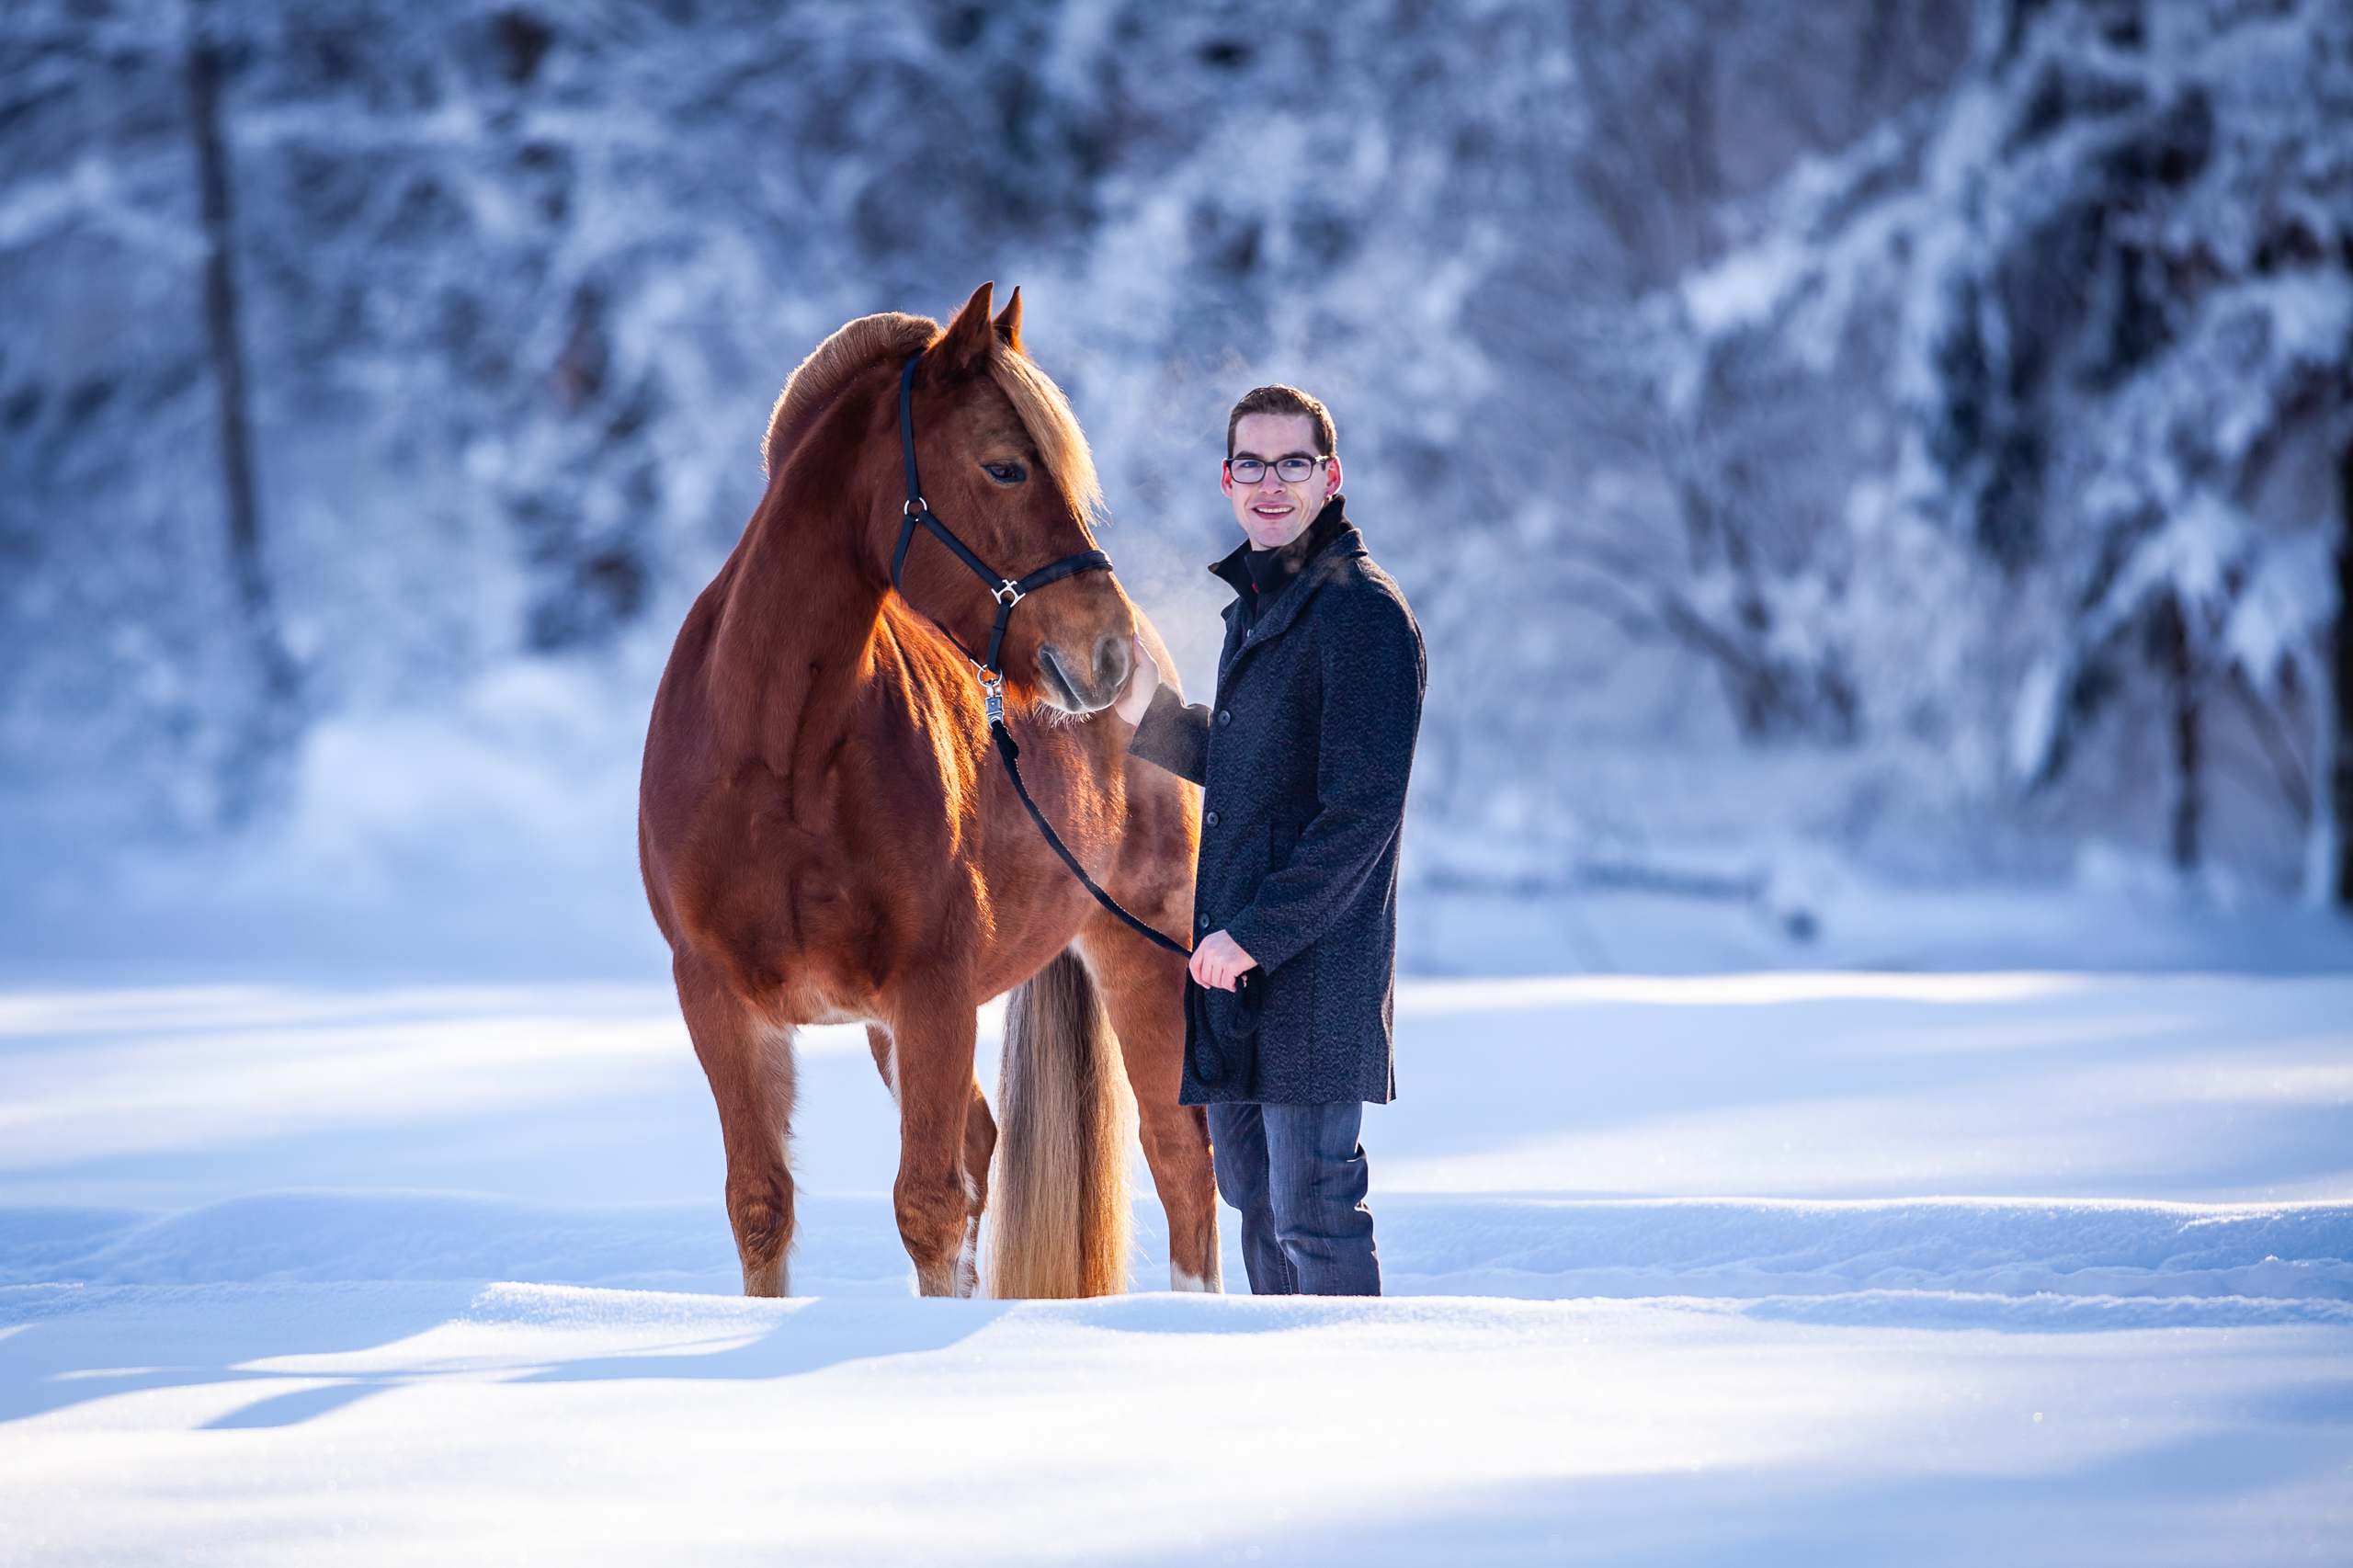 Pferde;Portfolio;Schnee;Tierfotografie;Winter;lumo obscura;outdoor